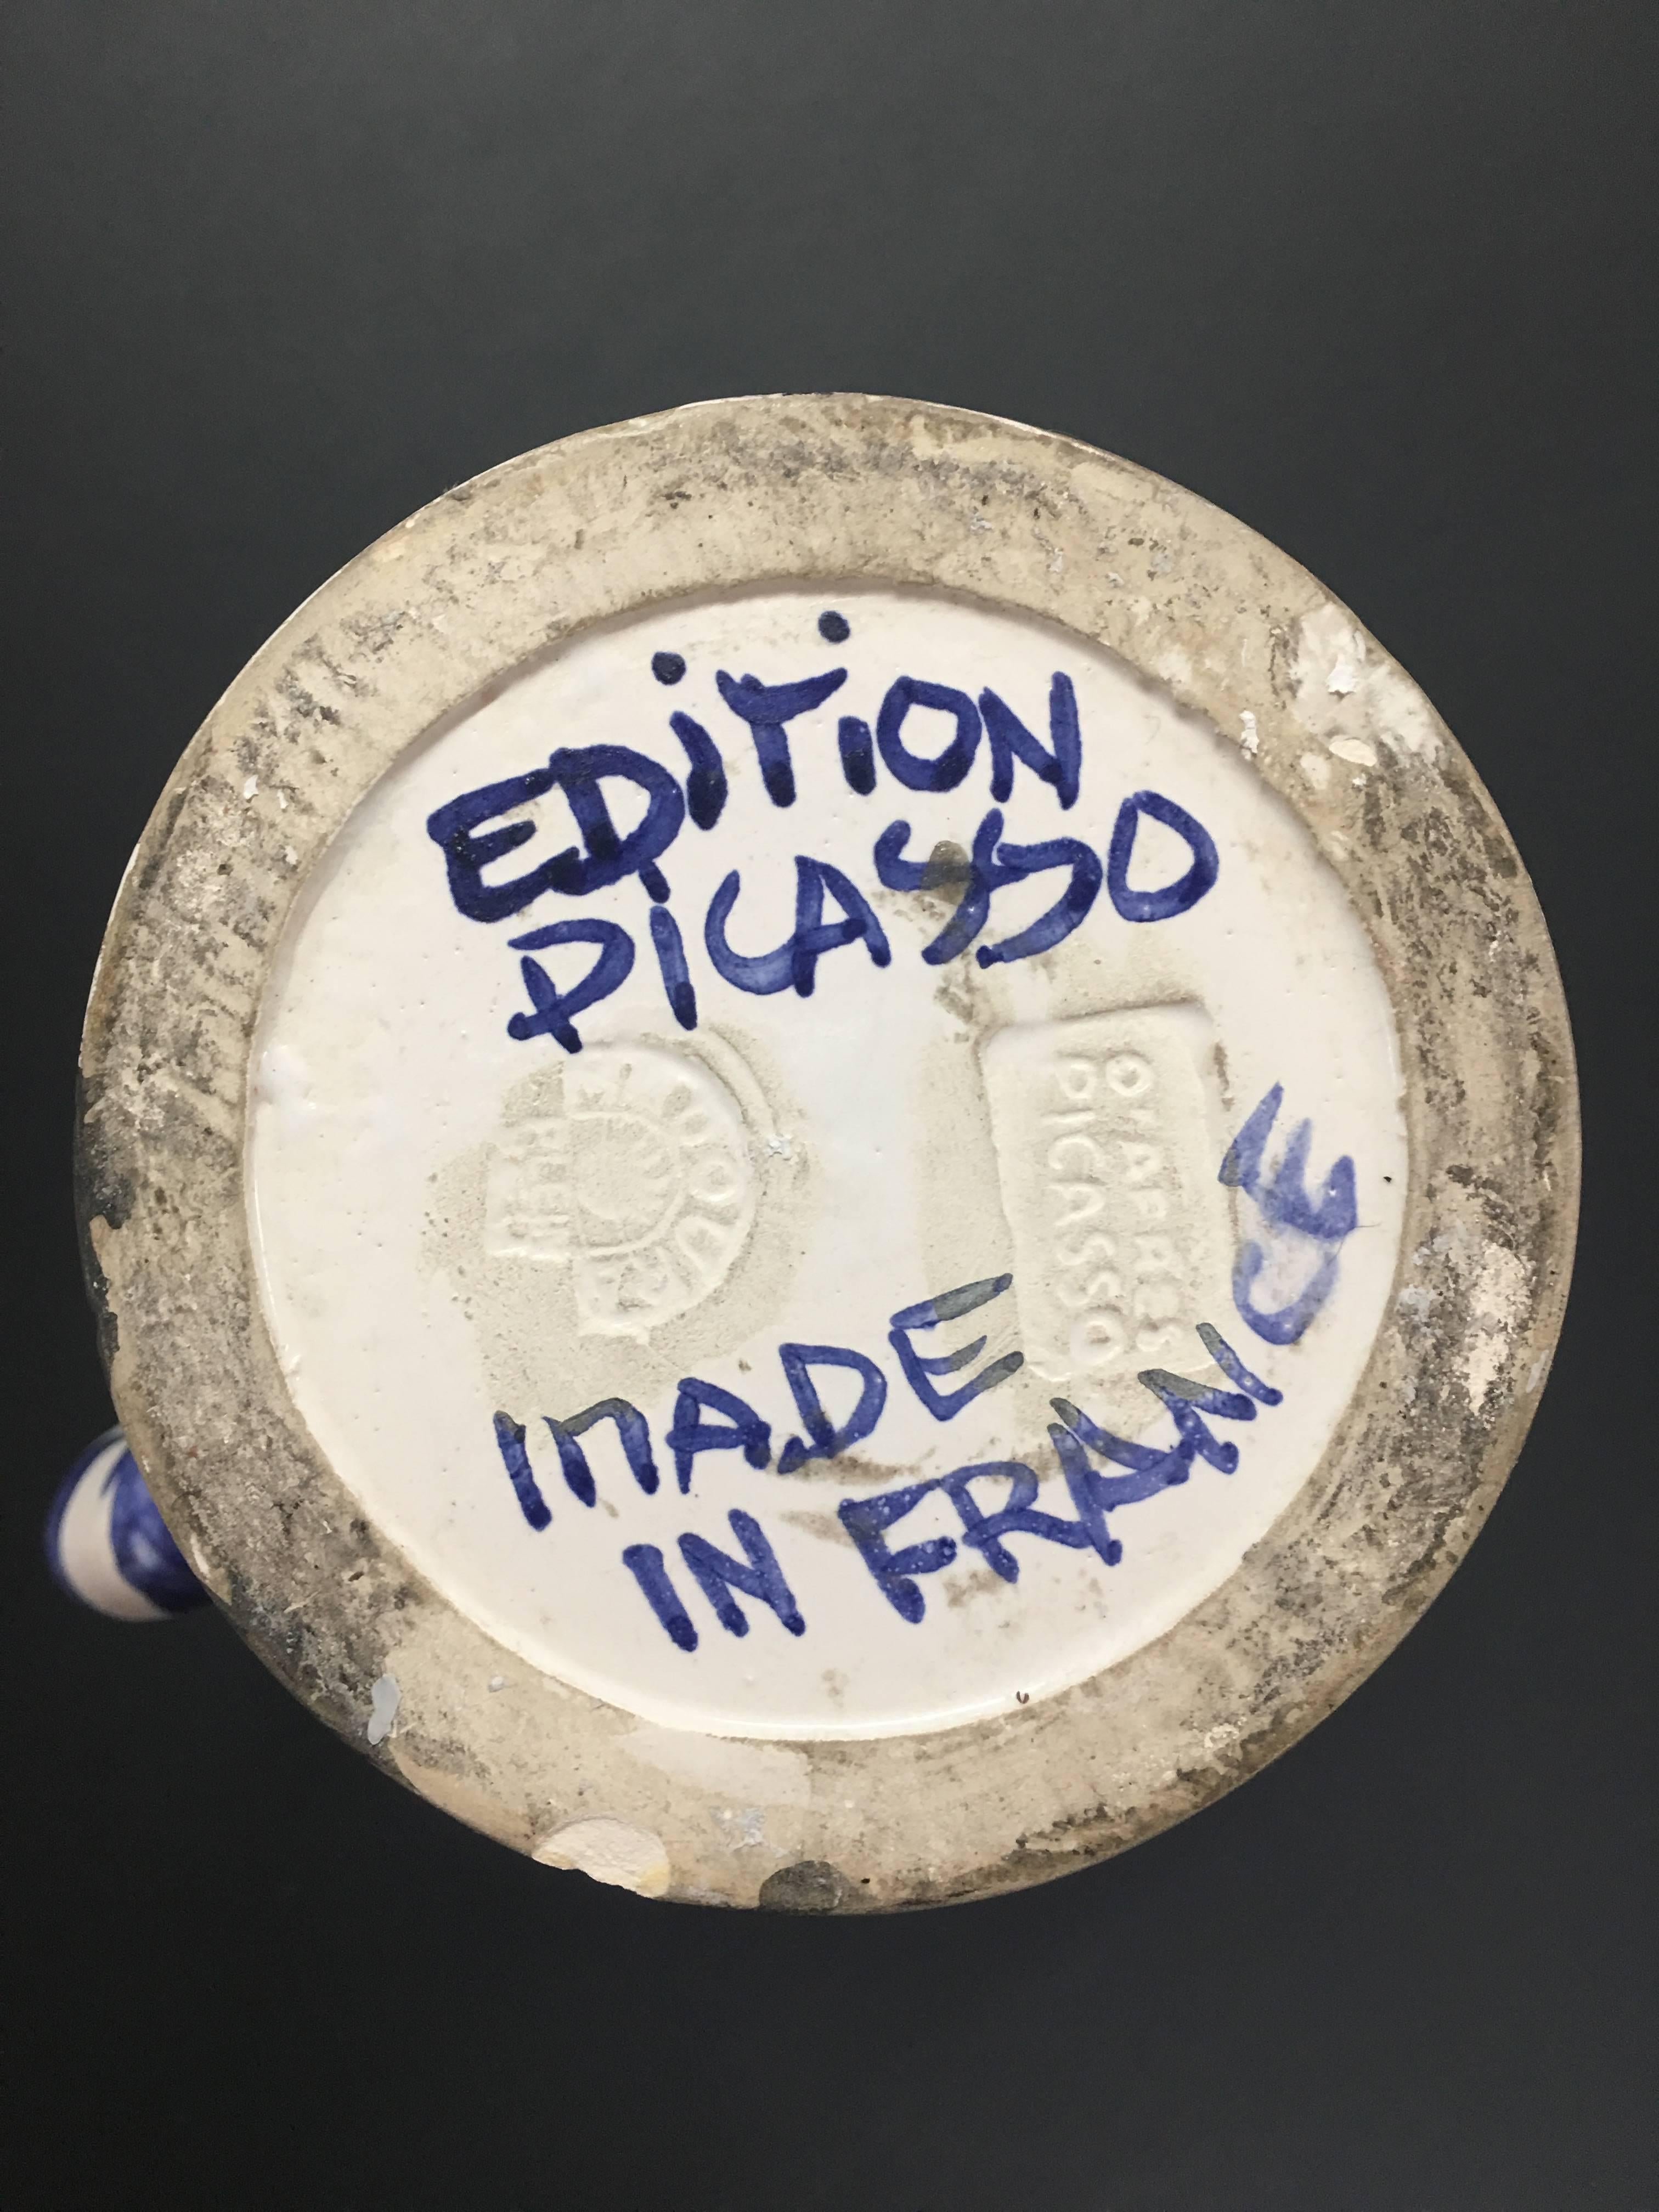  Pablo Picasso, variante unique du pichet 